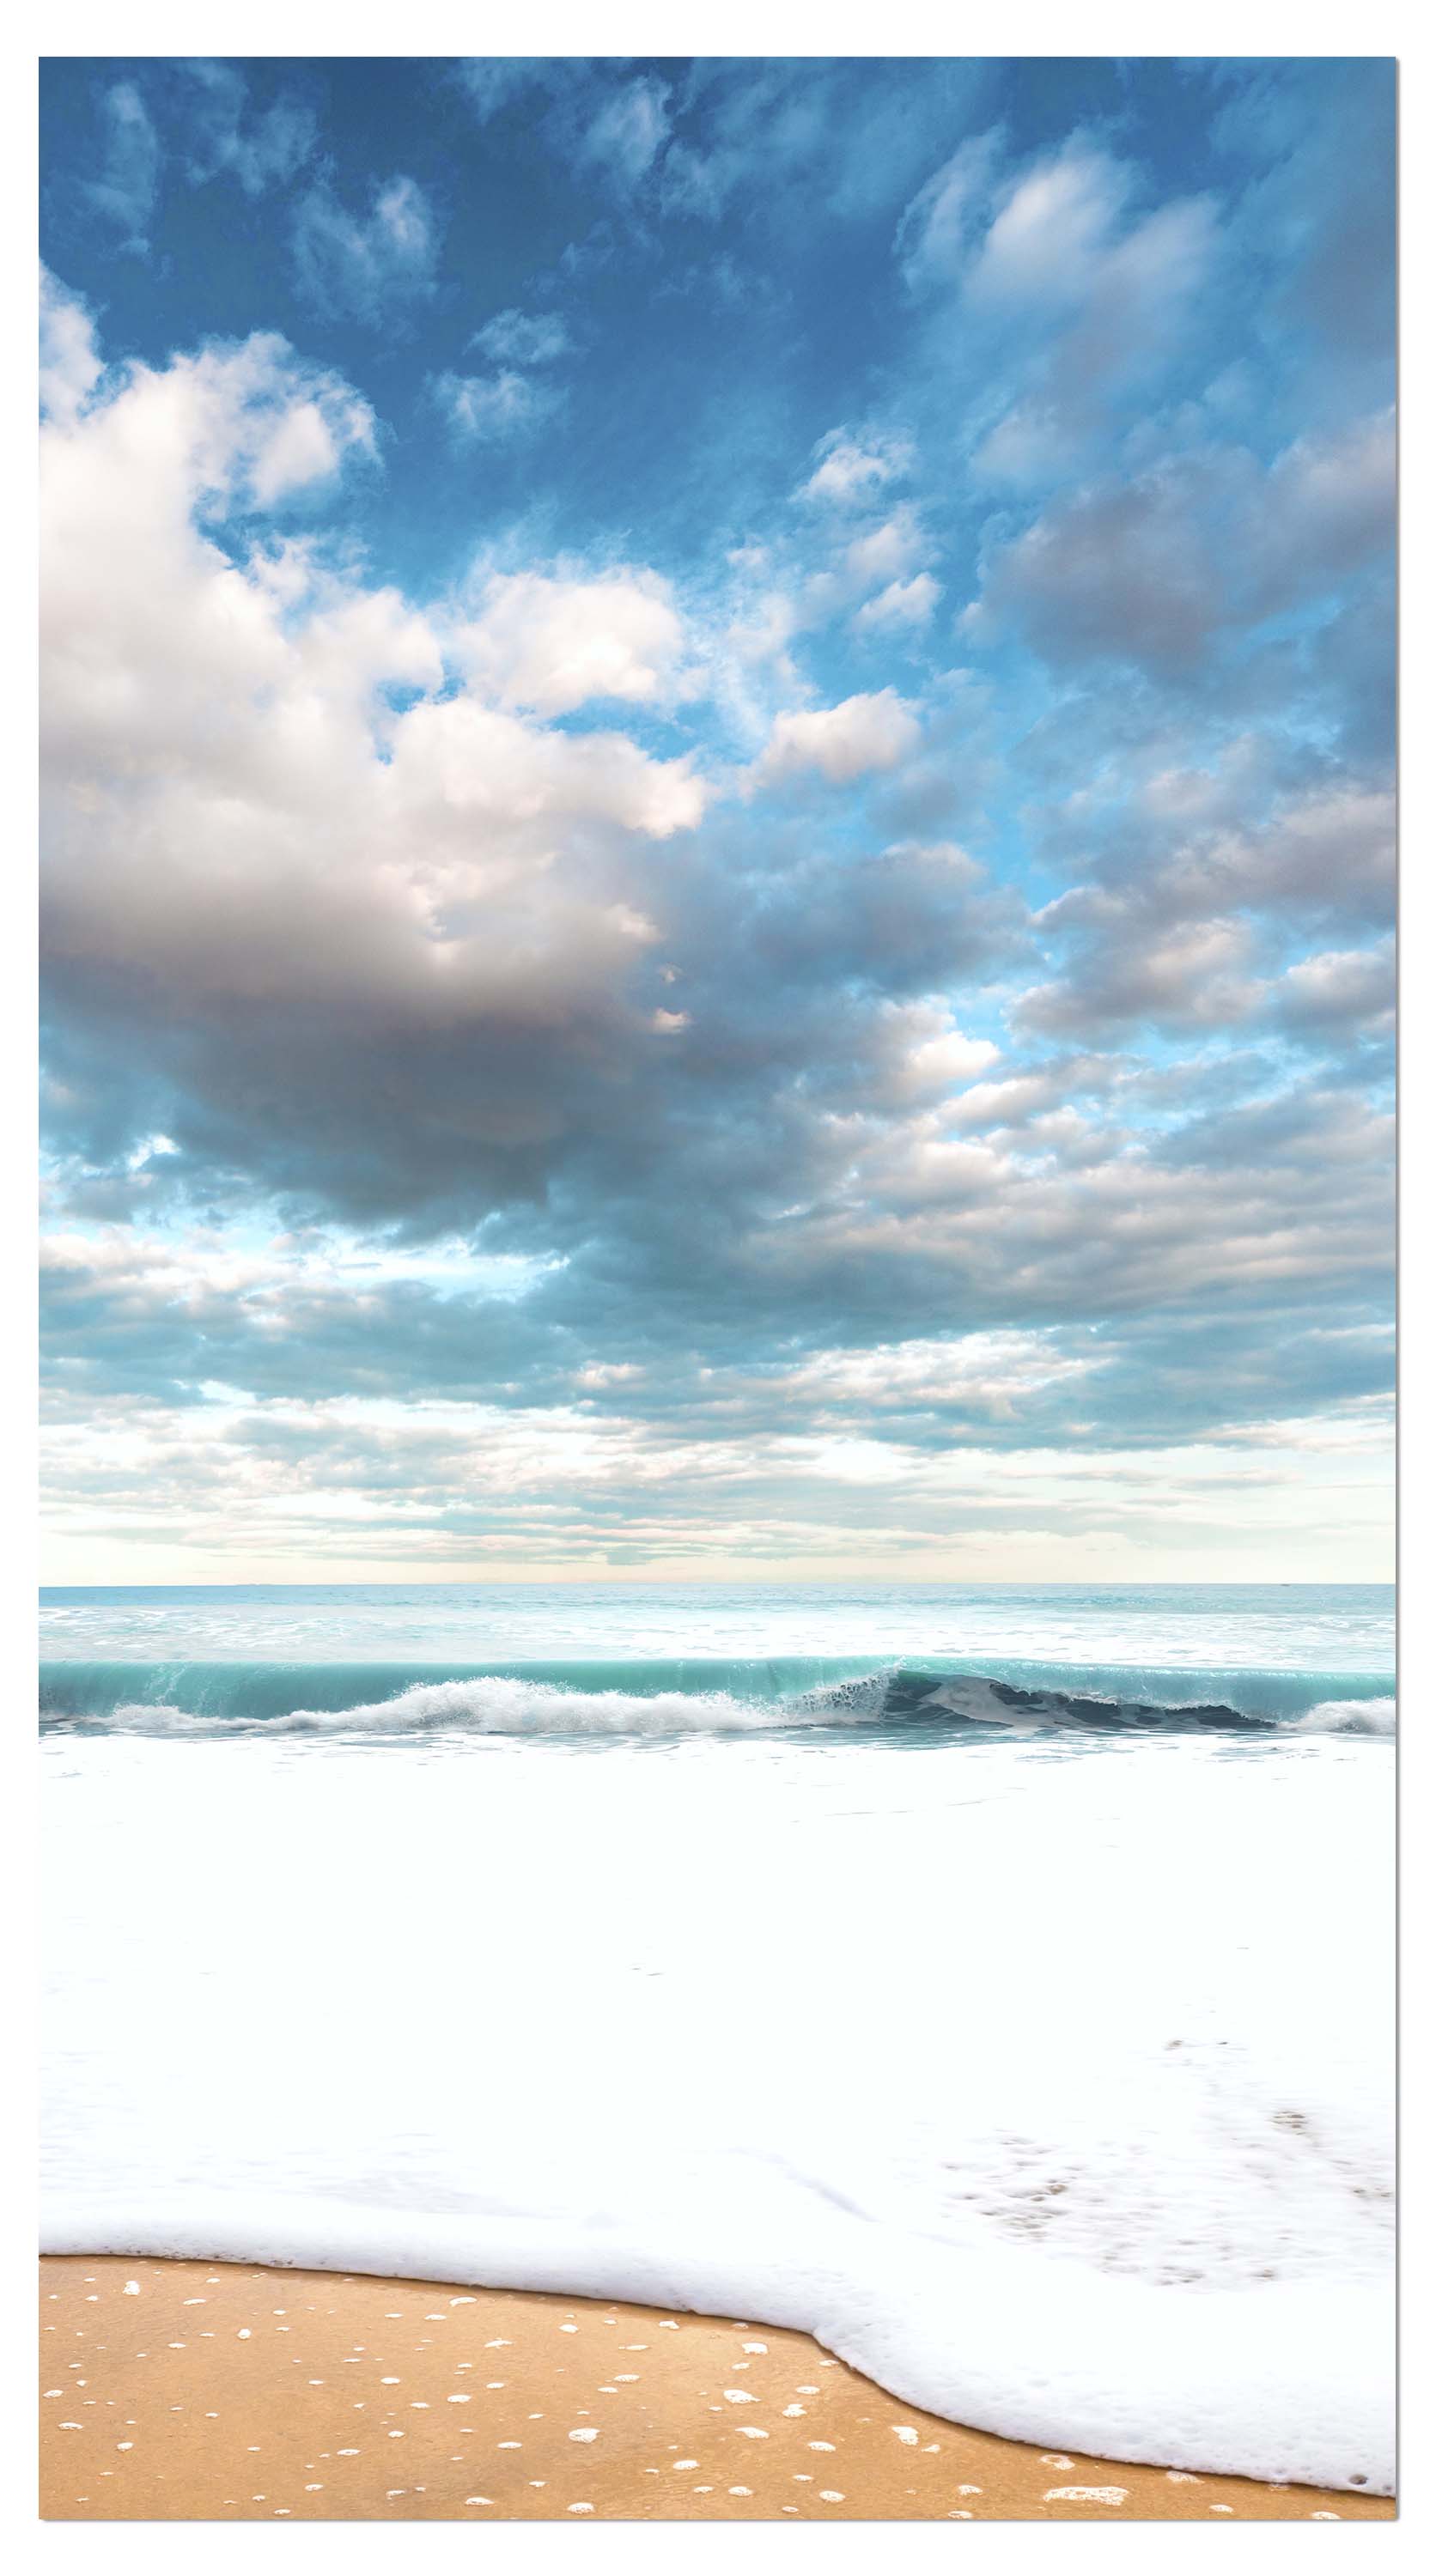 Garderobe Strand und idyllischer blauer Himmel M0925 entdecken - Bild 4